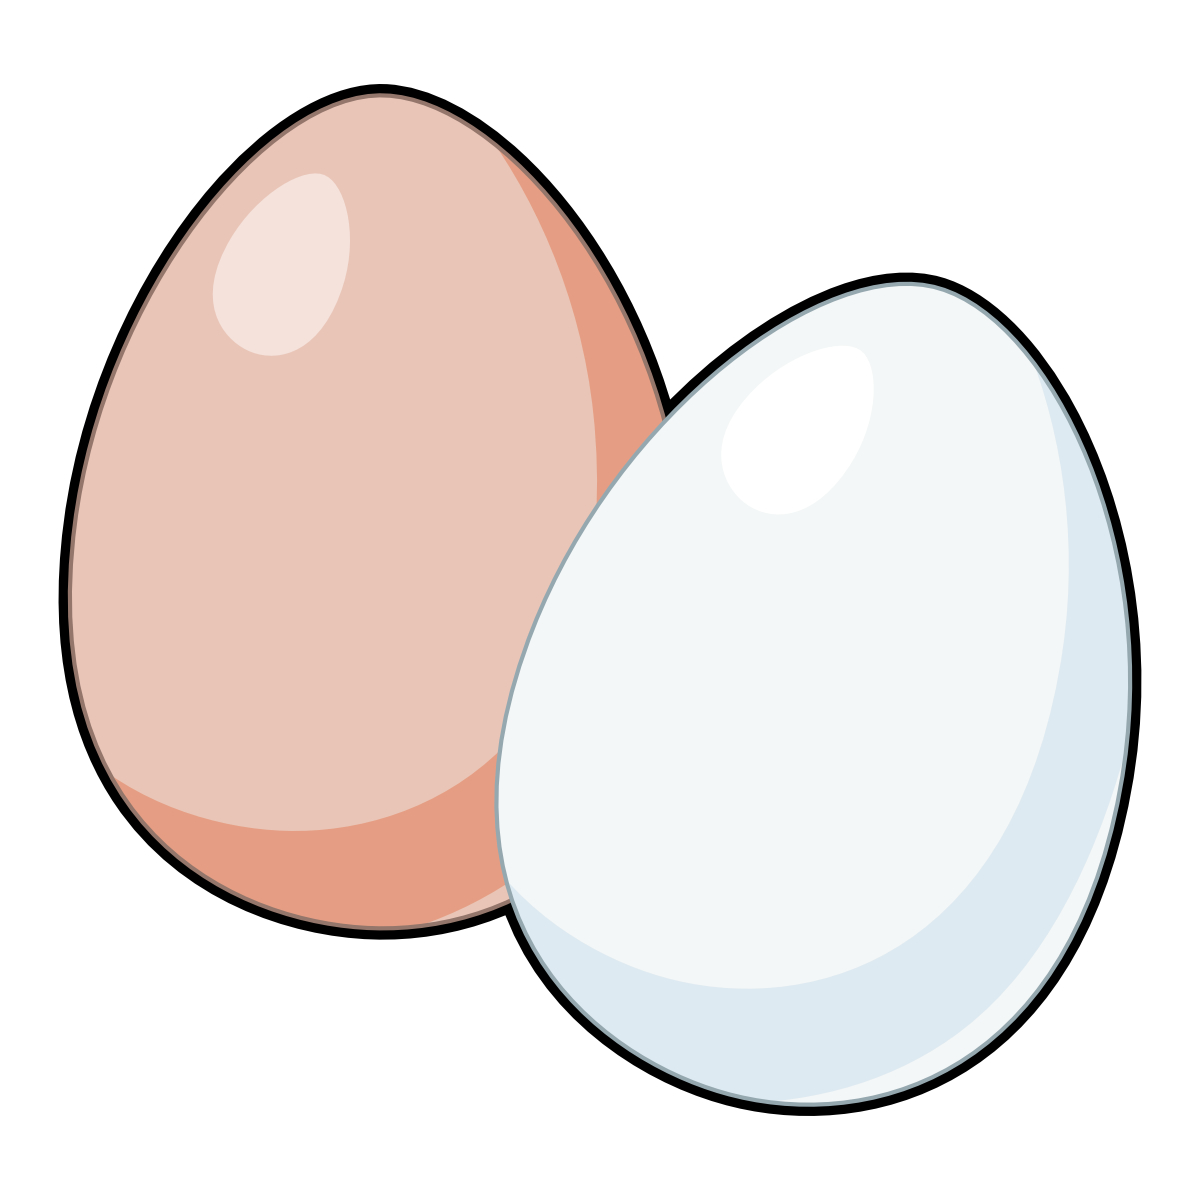 【4月17日】ピンポン球をつかんだ分だけ卵をゲット！フェリエ南草津で「たまごつかみどりチャレンジ」が開催☆